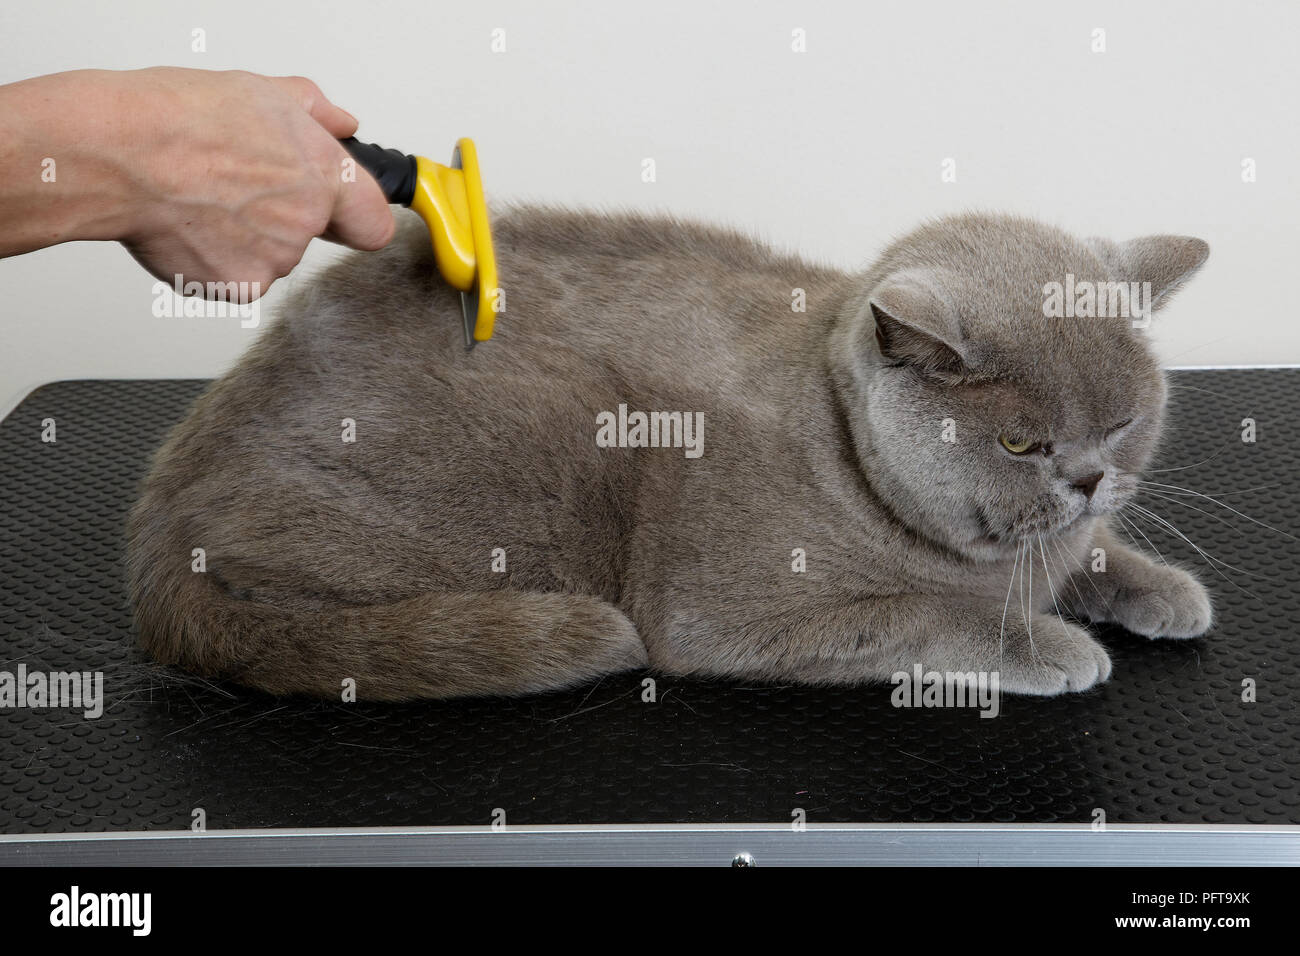 British Shorthair azul: grooming untar con derramamiento de la cuchilla en el acicalamiento salón Foto de stock